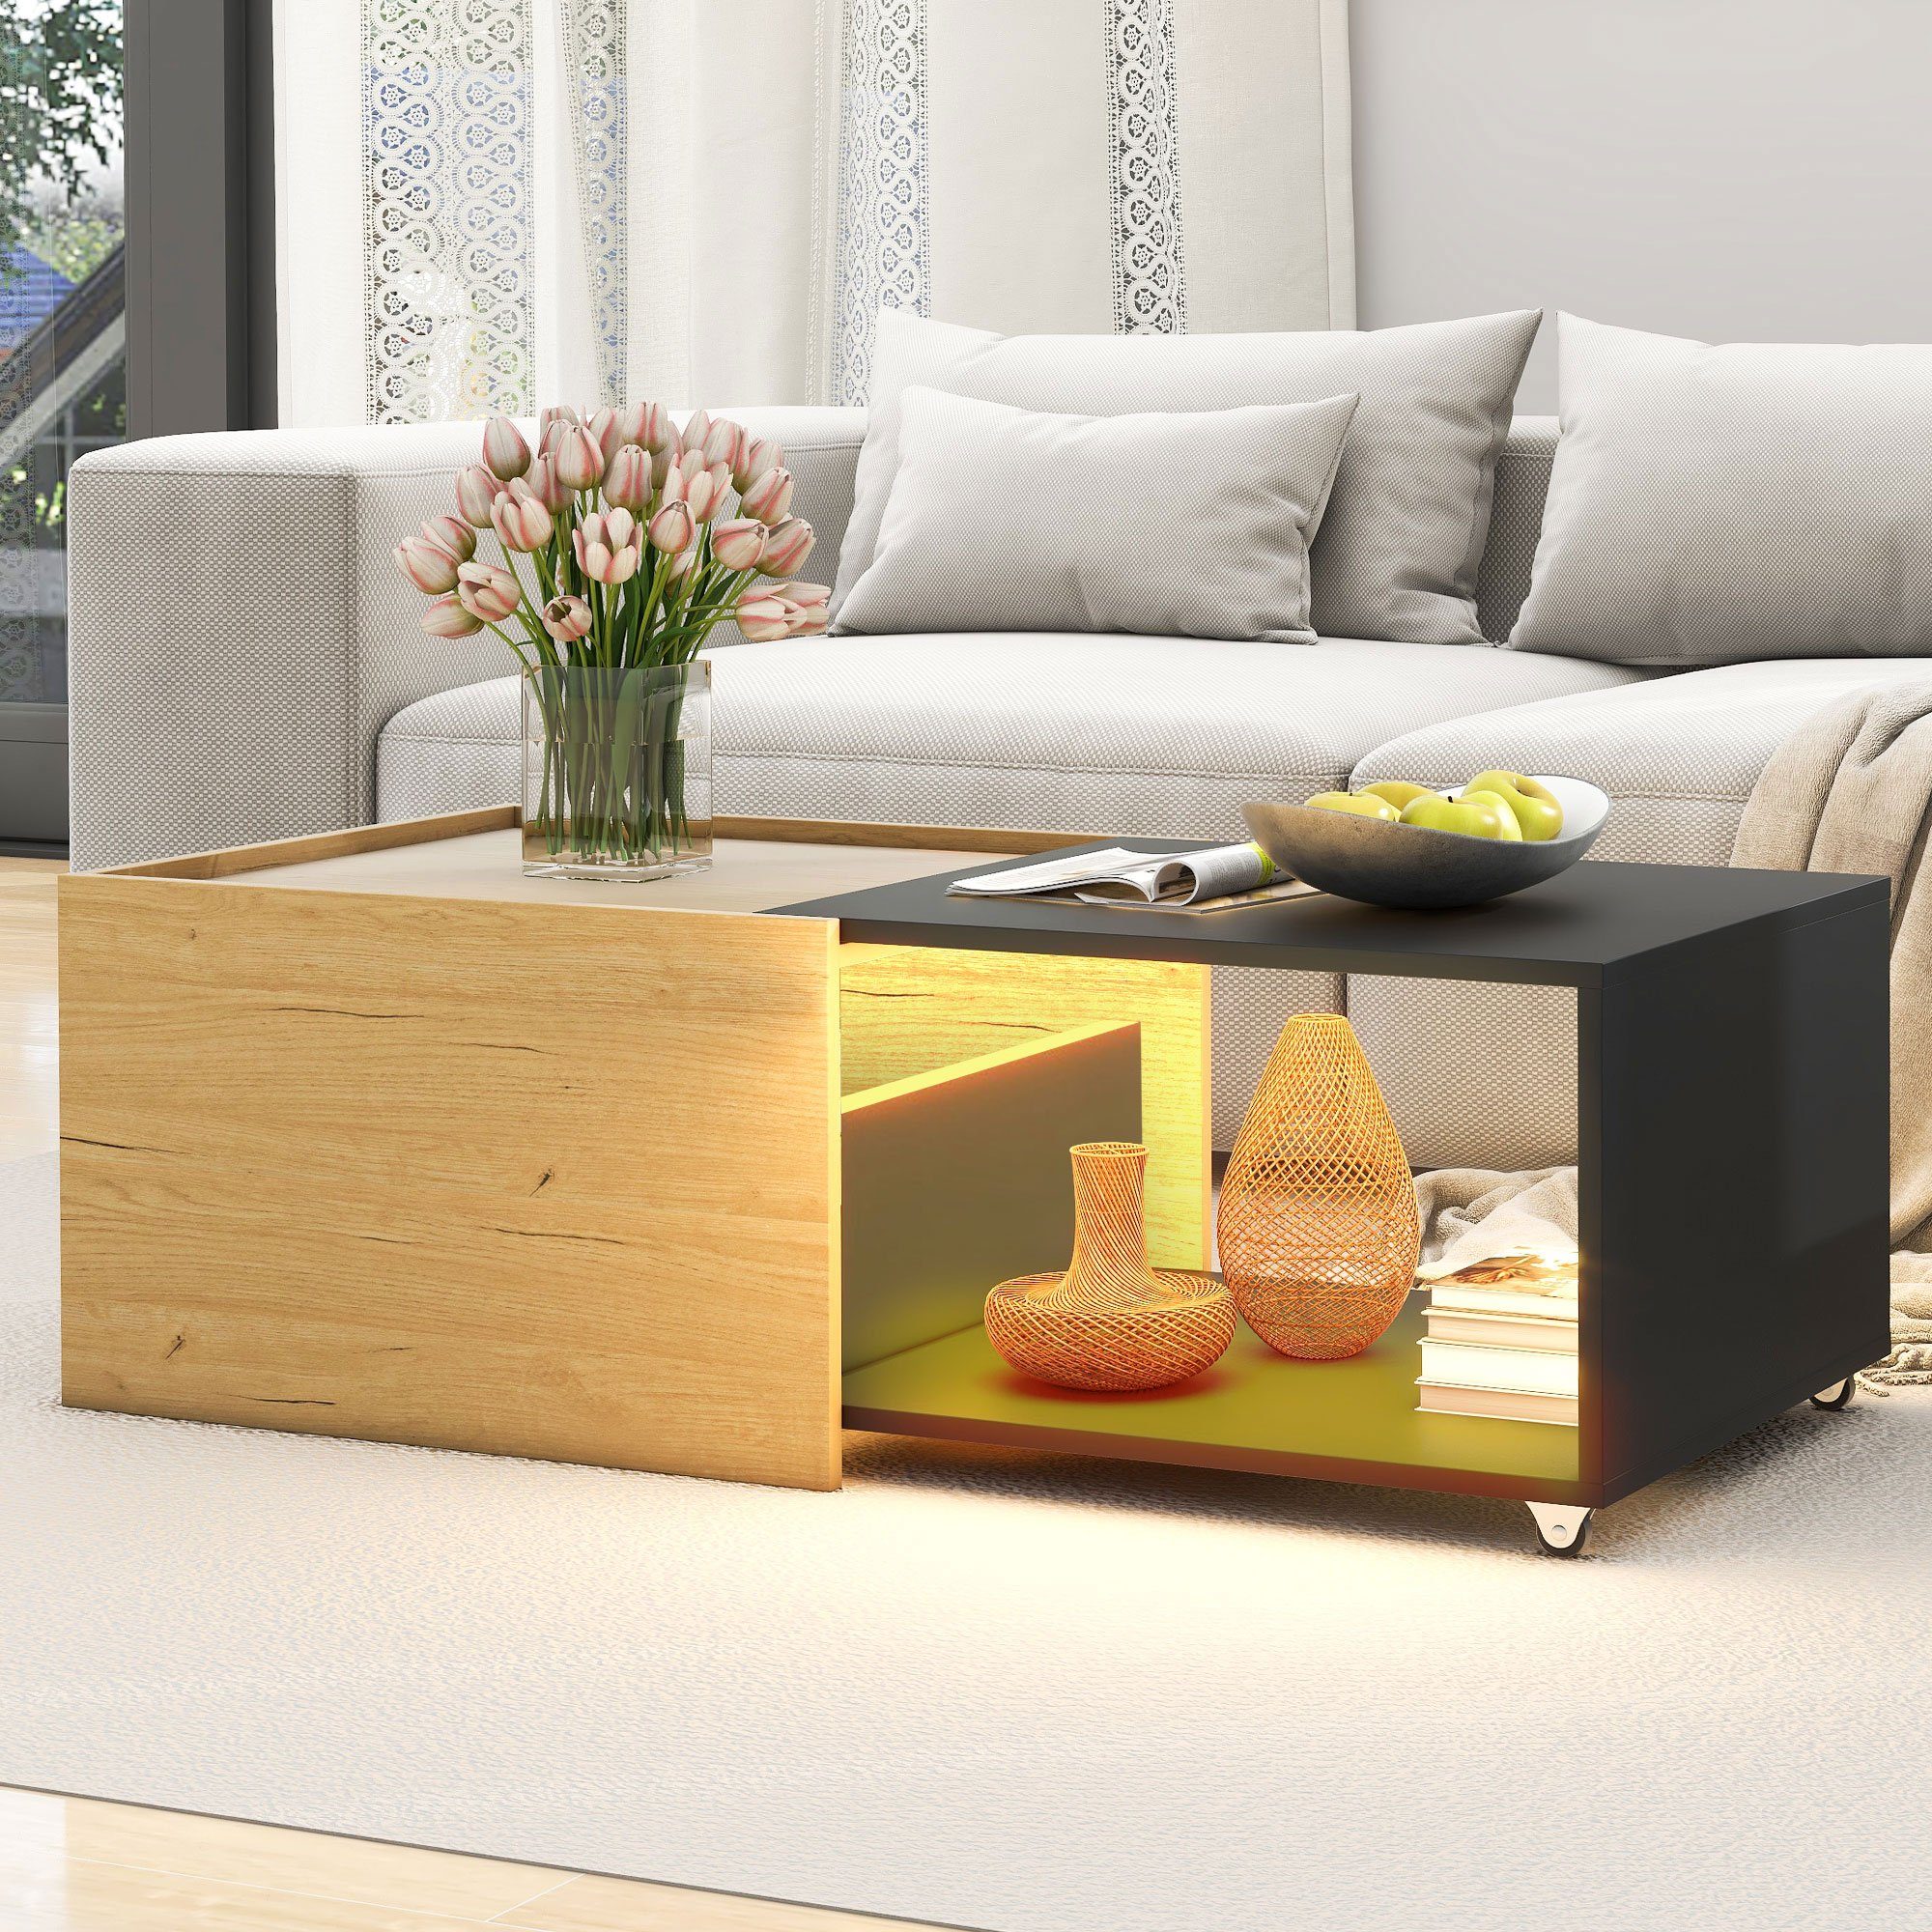 OKWISH Couchtisch Wohnzimmertisch mit ausziehbarem Tischplatte (Ausziehbares Design), Zweifarbiges Spleißdesign Mobilität und Flexibilität